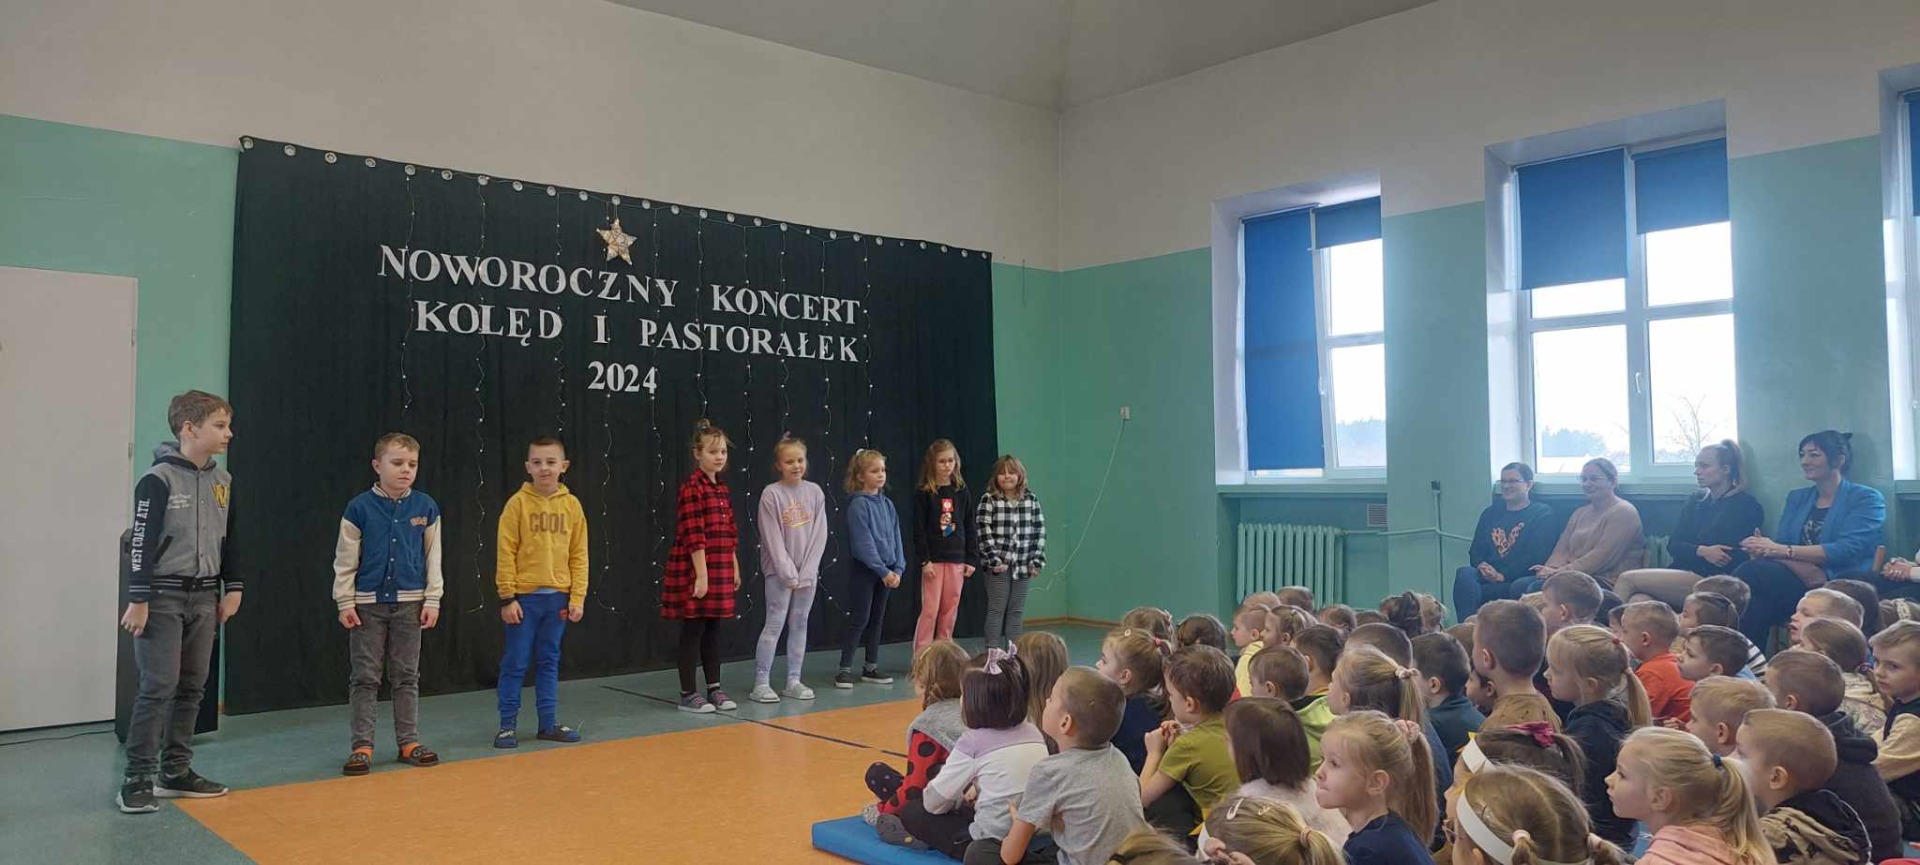 "Noworoczny koncert kolęd i pastorałek 2024" - Obrazek 1